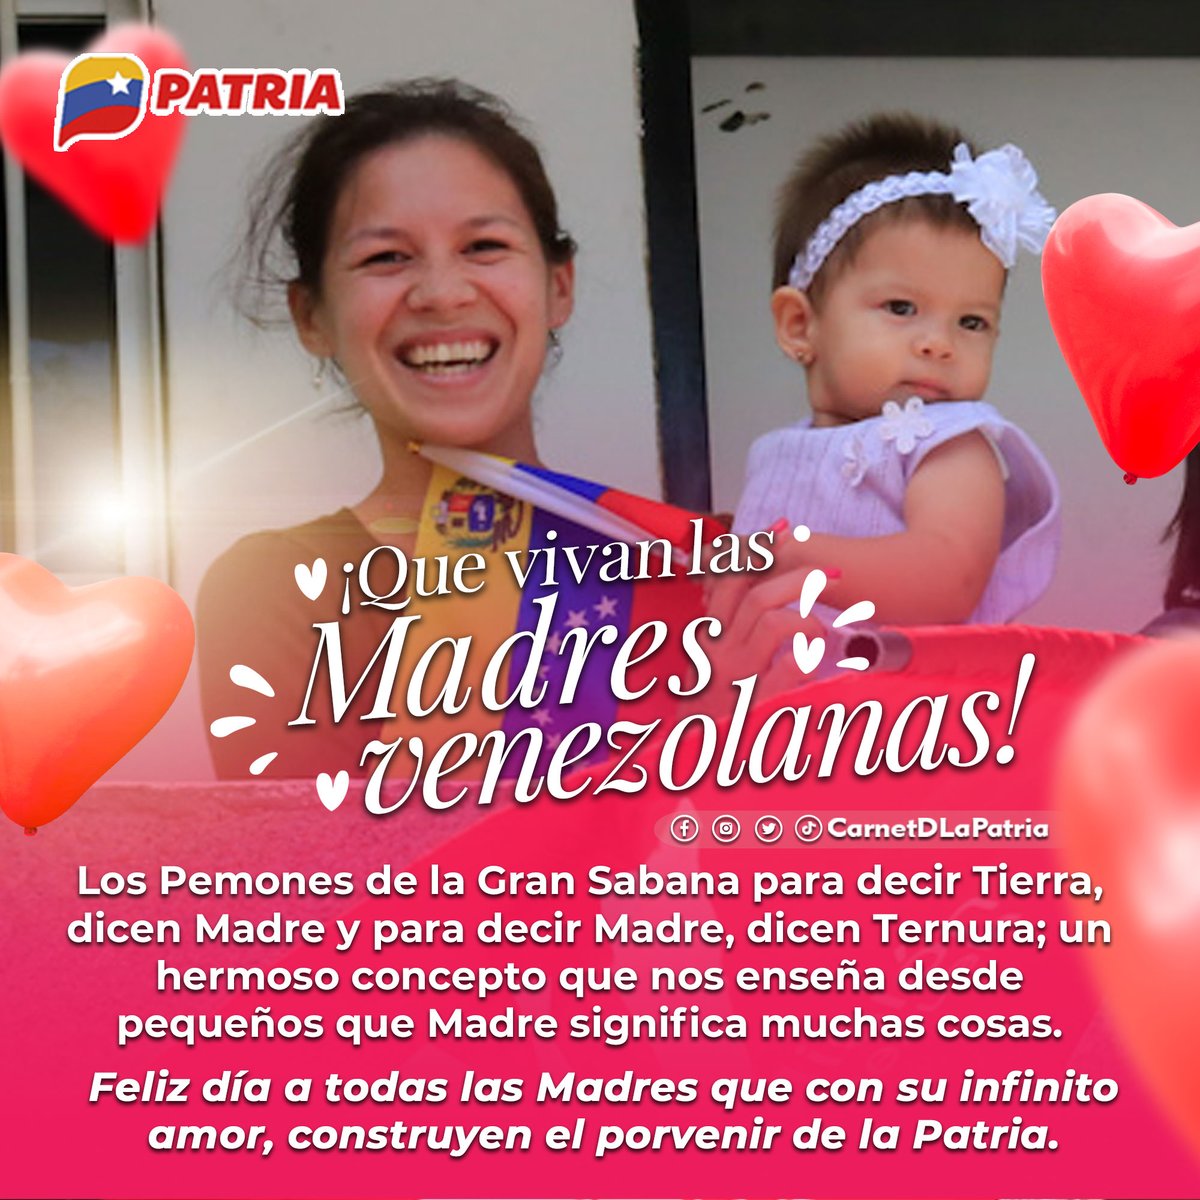 El #SistemaPatria felicita a todas las madres que con su amor infinito, dedicación y ternura, día a día construyen el porvenir de la Patria. Un abrazo inmenso y que Dios las bendiga siempre. ¡Que vivan las madres venezolanas! #MadreSerDeVida #12May